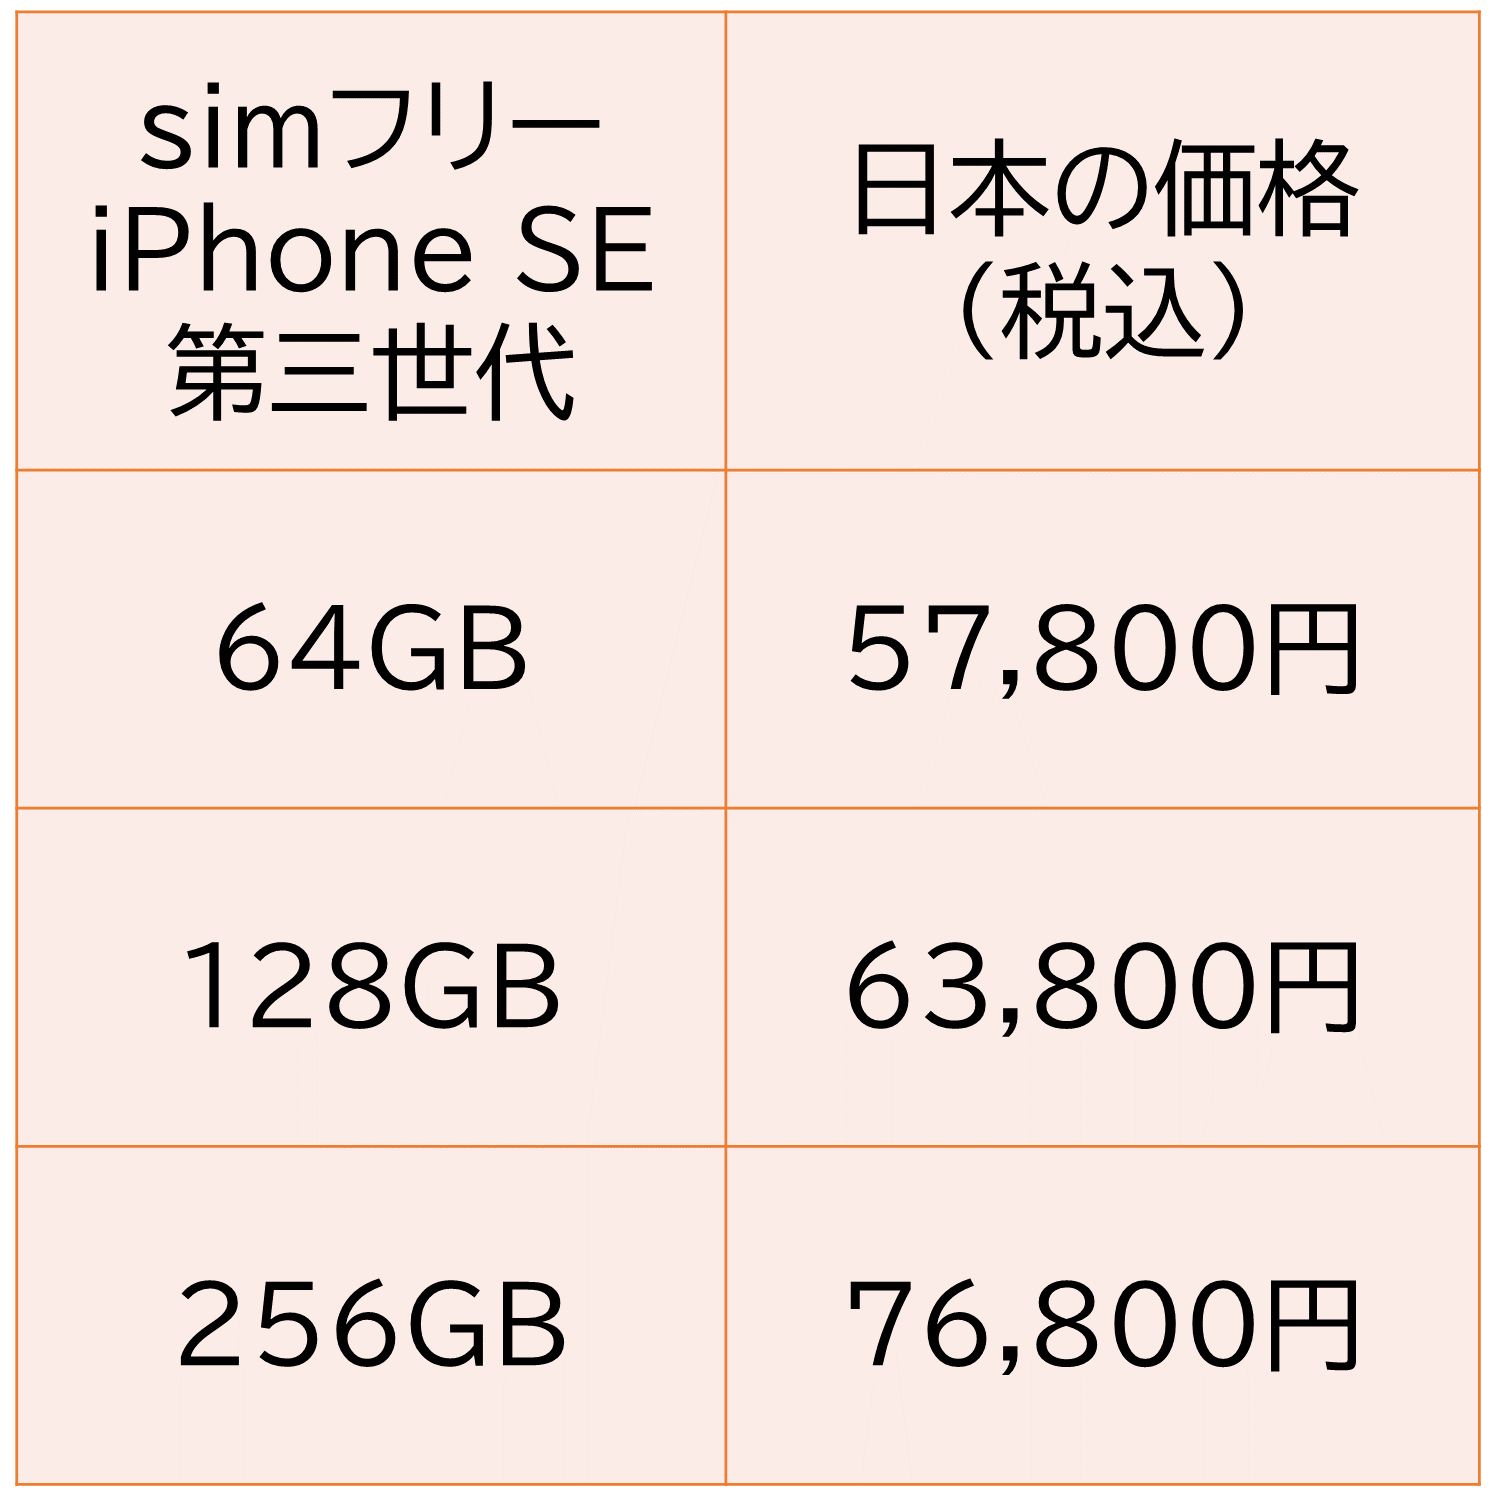 simフリーiPhone SE 第三世代の販売価格